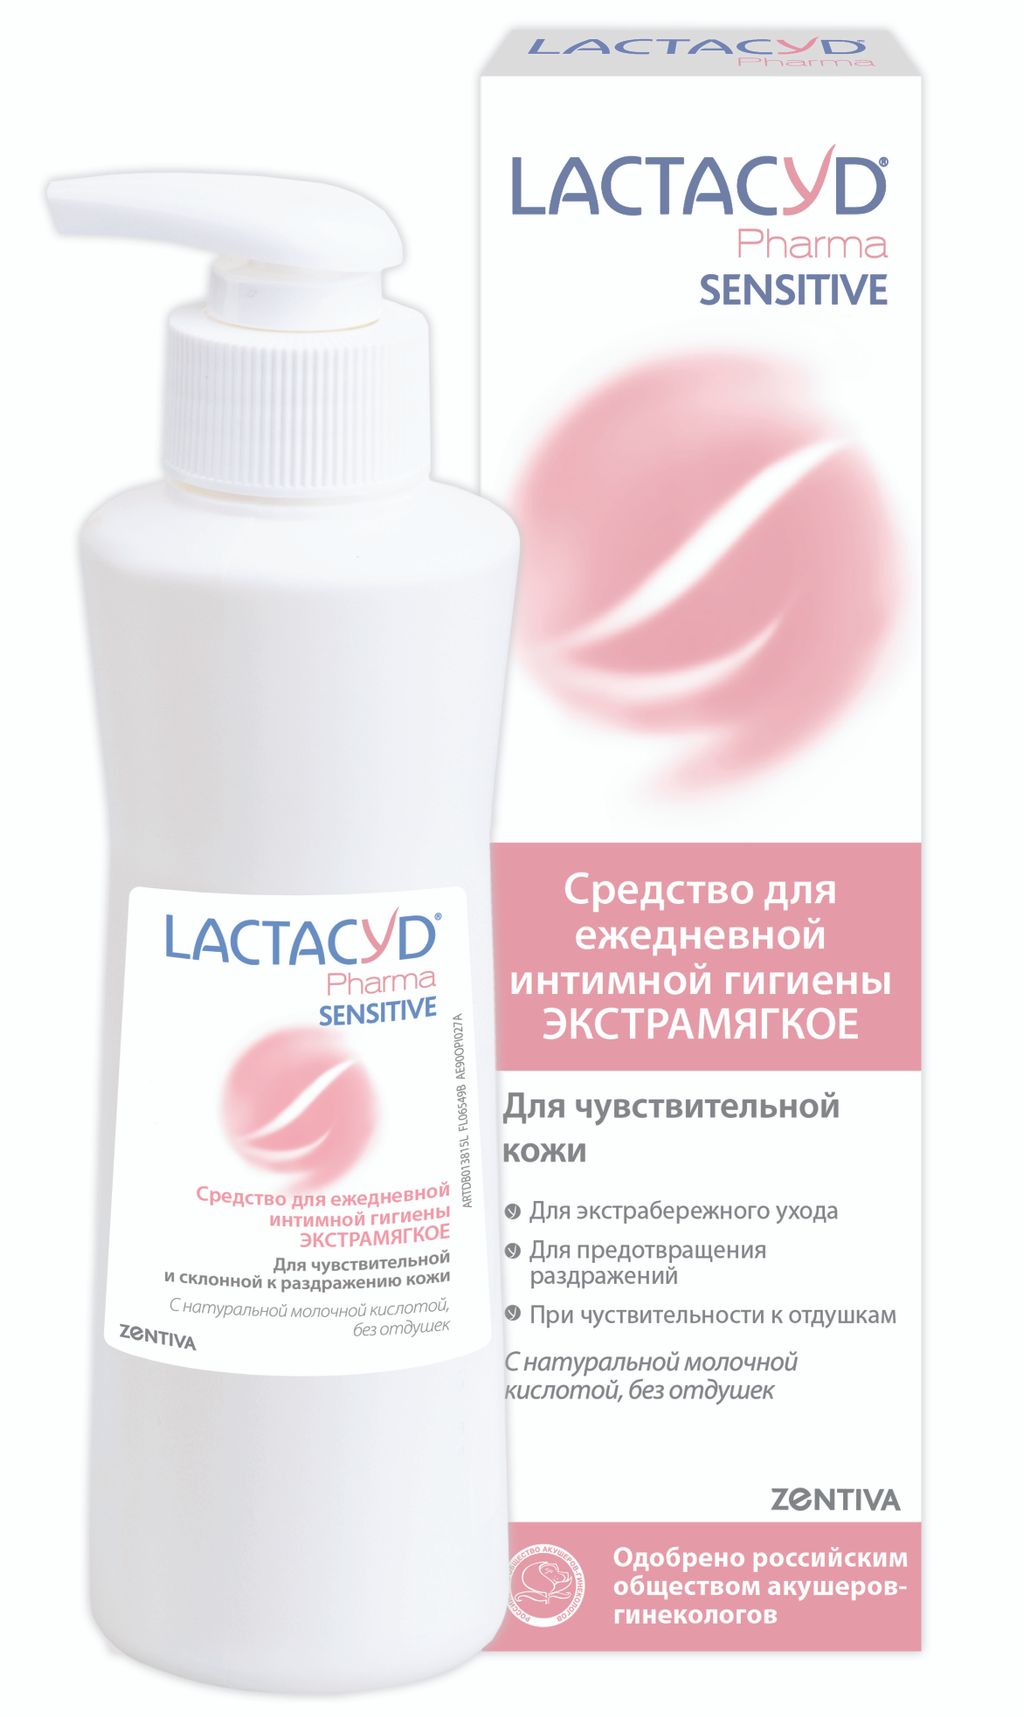 Lactacyd Pharma Sensitive Средство для интимной гигиены, гель, для чувствительной кожи, 250 мл, 1 шт.